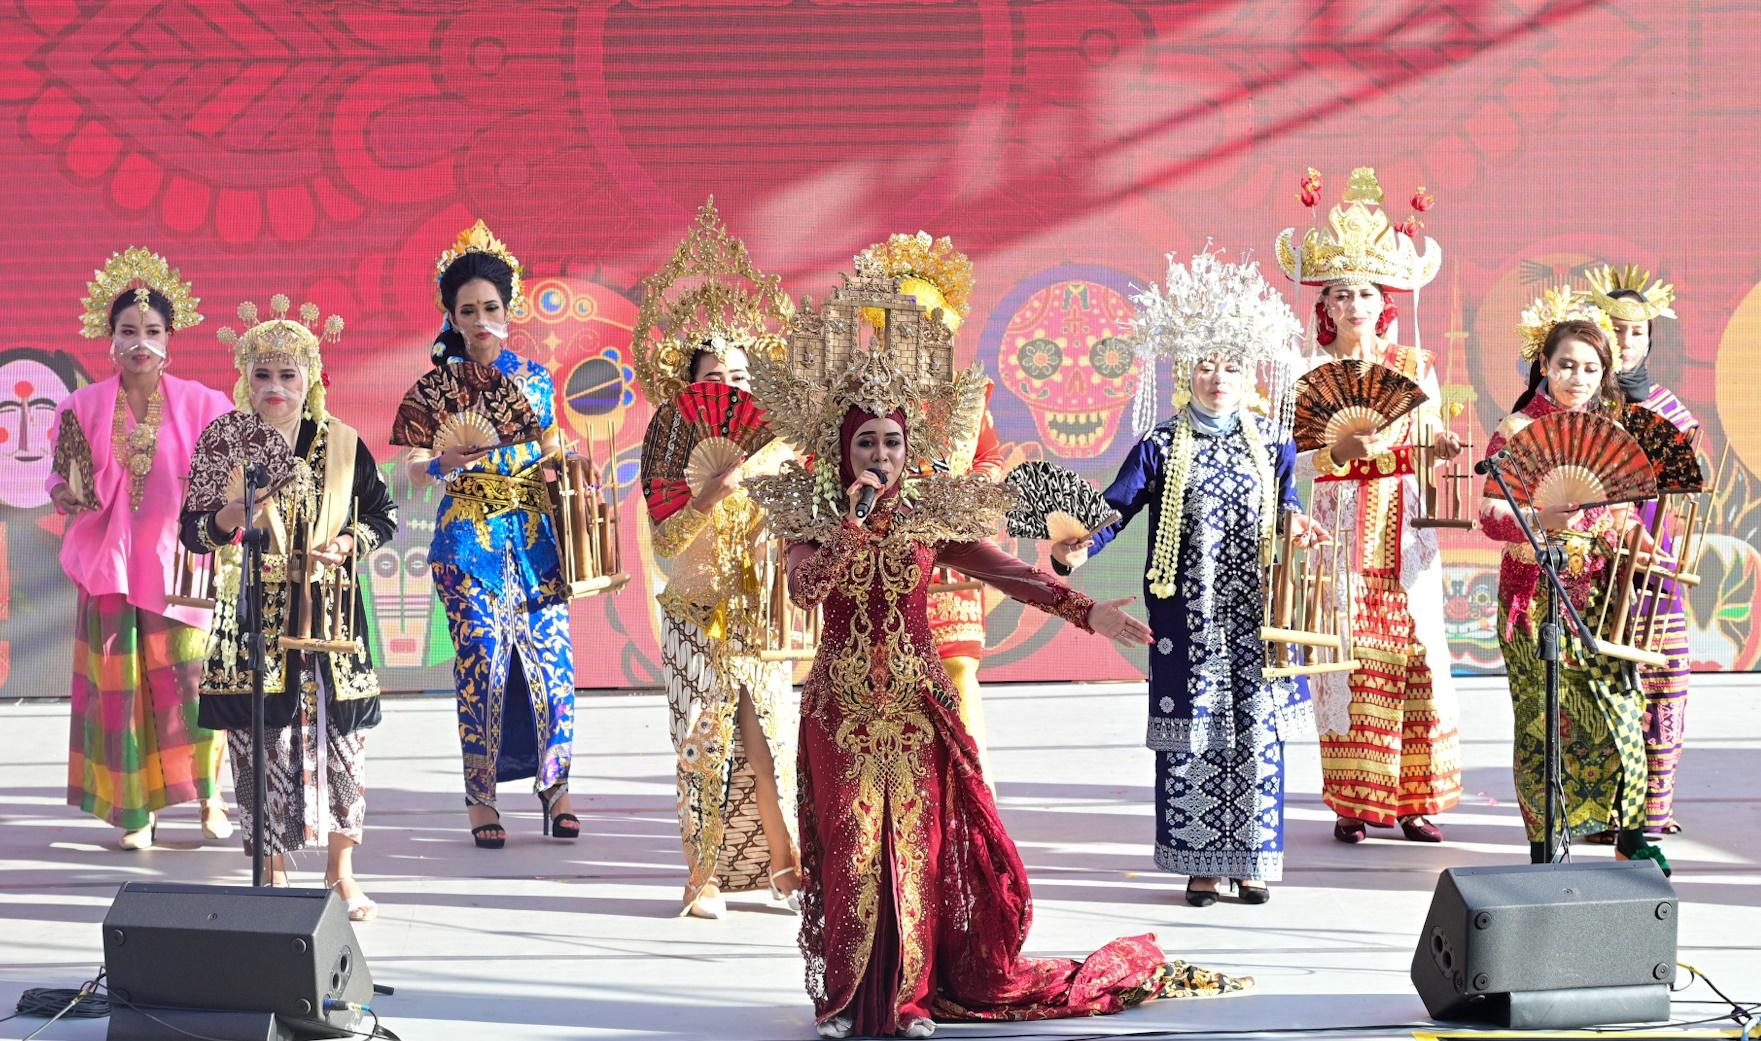 讓市民一睹亞洲多個民族文化色彩的「亞裔藝采」將於十一月十二日（星期日）下午一時至五時在香港文化中心露天廣場及大堂舉行，透過豐富的民族舞、樂器表演、服裝和武術表演，展現亞洲各地的文化和演藝才華。